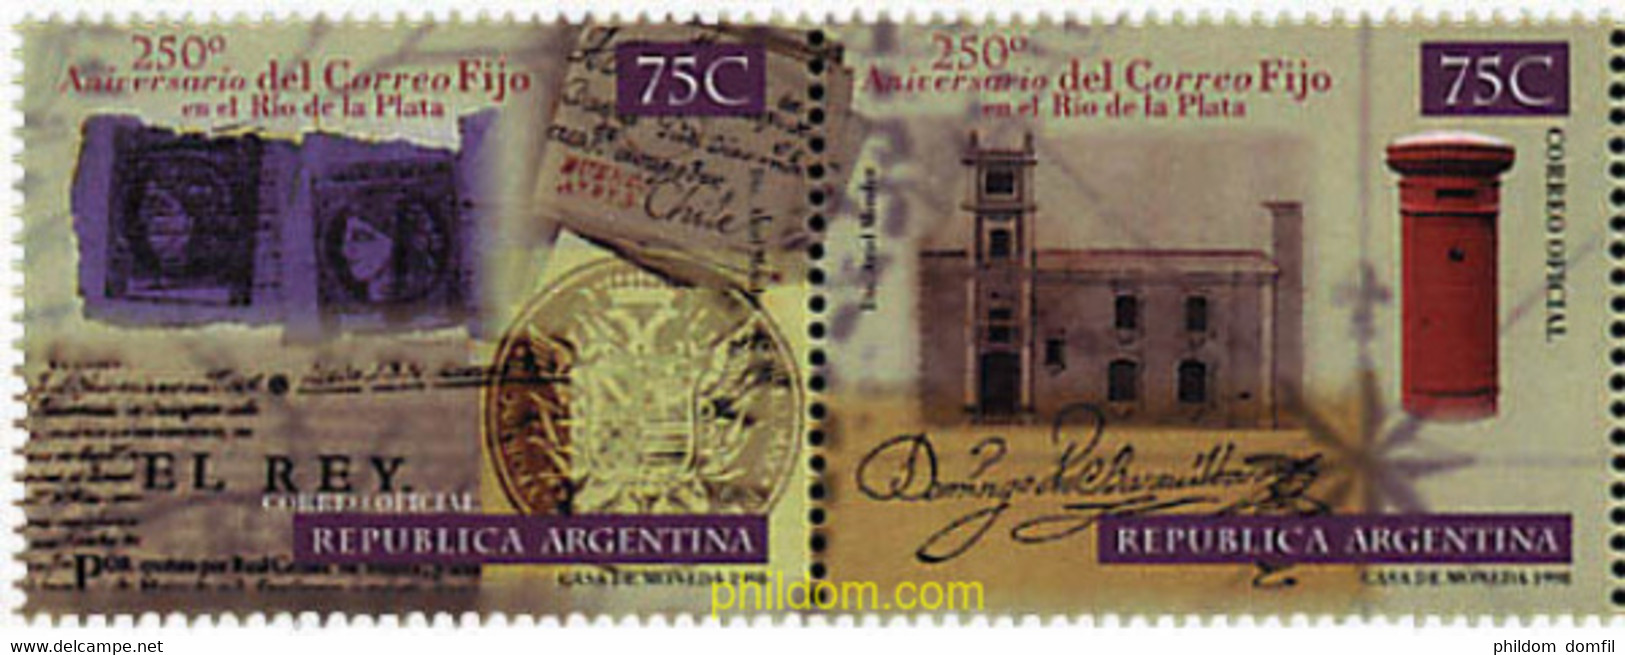 6940 MNH ARGENTINA 1998 250 ANIVERSARIO DEL "CORREO FIJO" EN RIO DE LA PLATA - Oblitérés